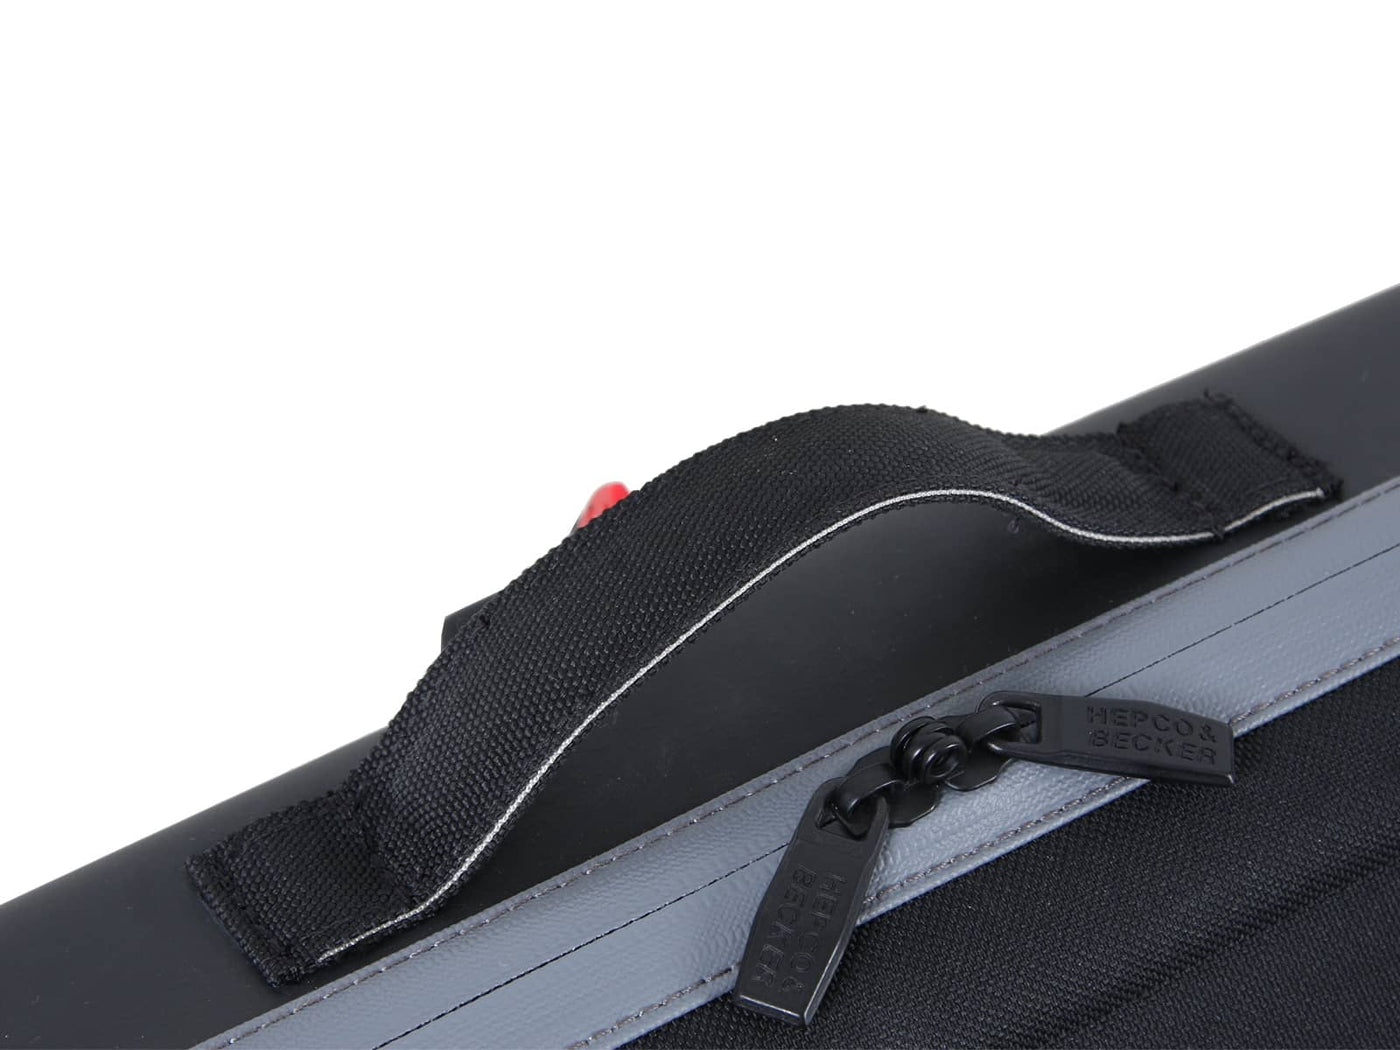 Royster Speed Side Bag Set for C-Bow Holder